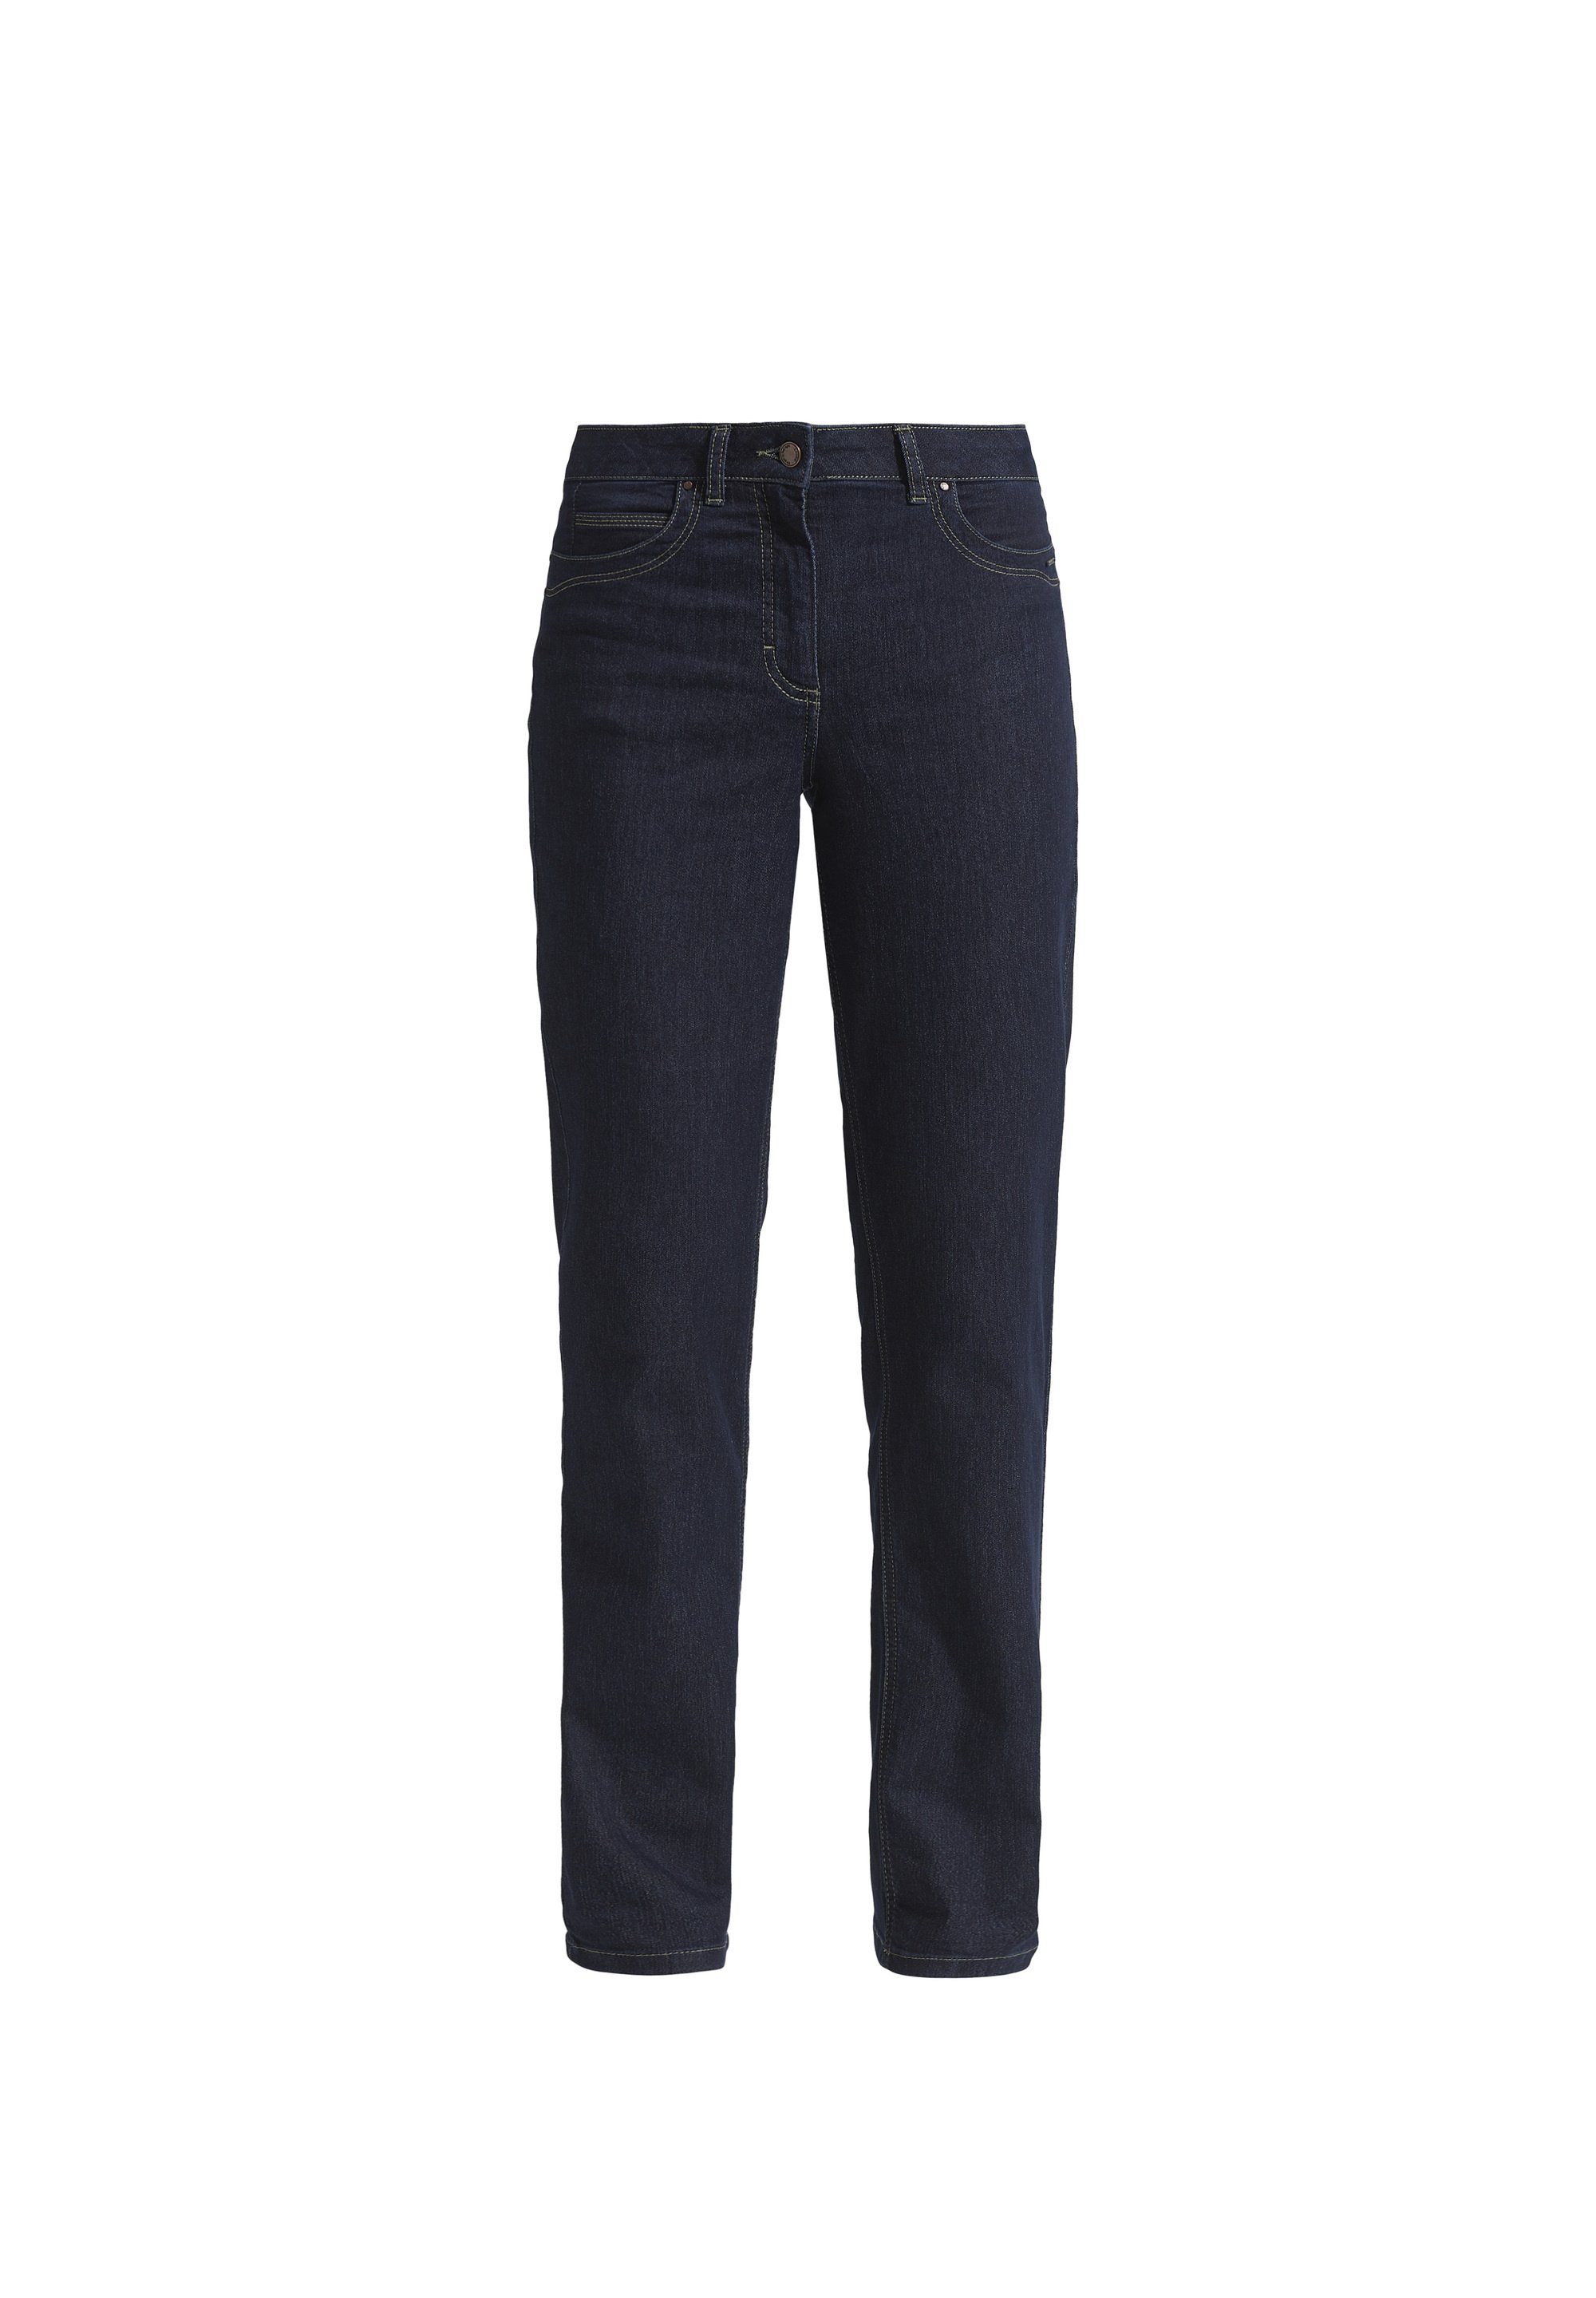 Damen Jeans LauRie Loose-fit-Jeans Charlotte Regular Denim, 5-Pocket Jeans